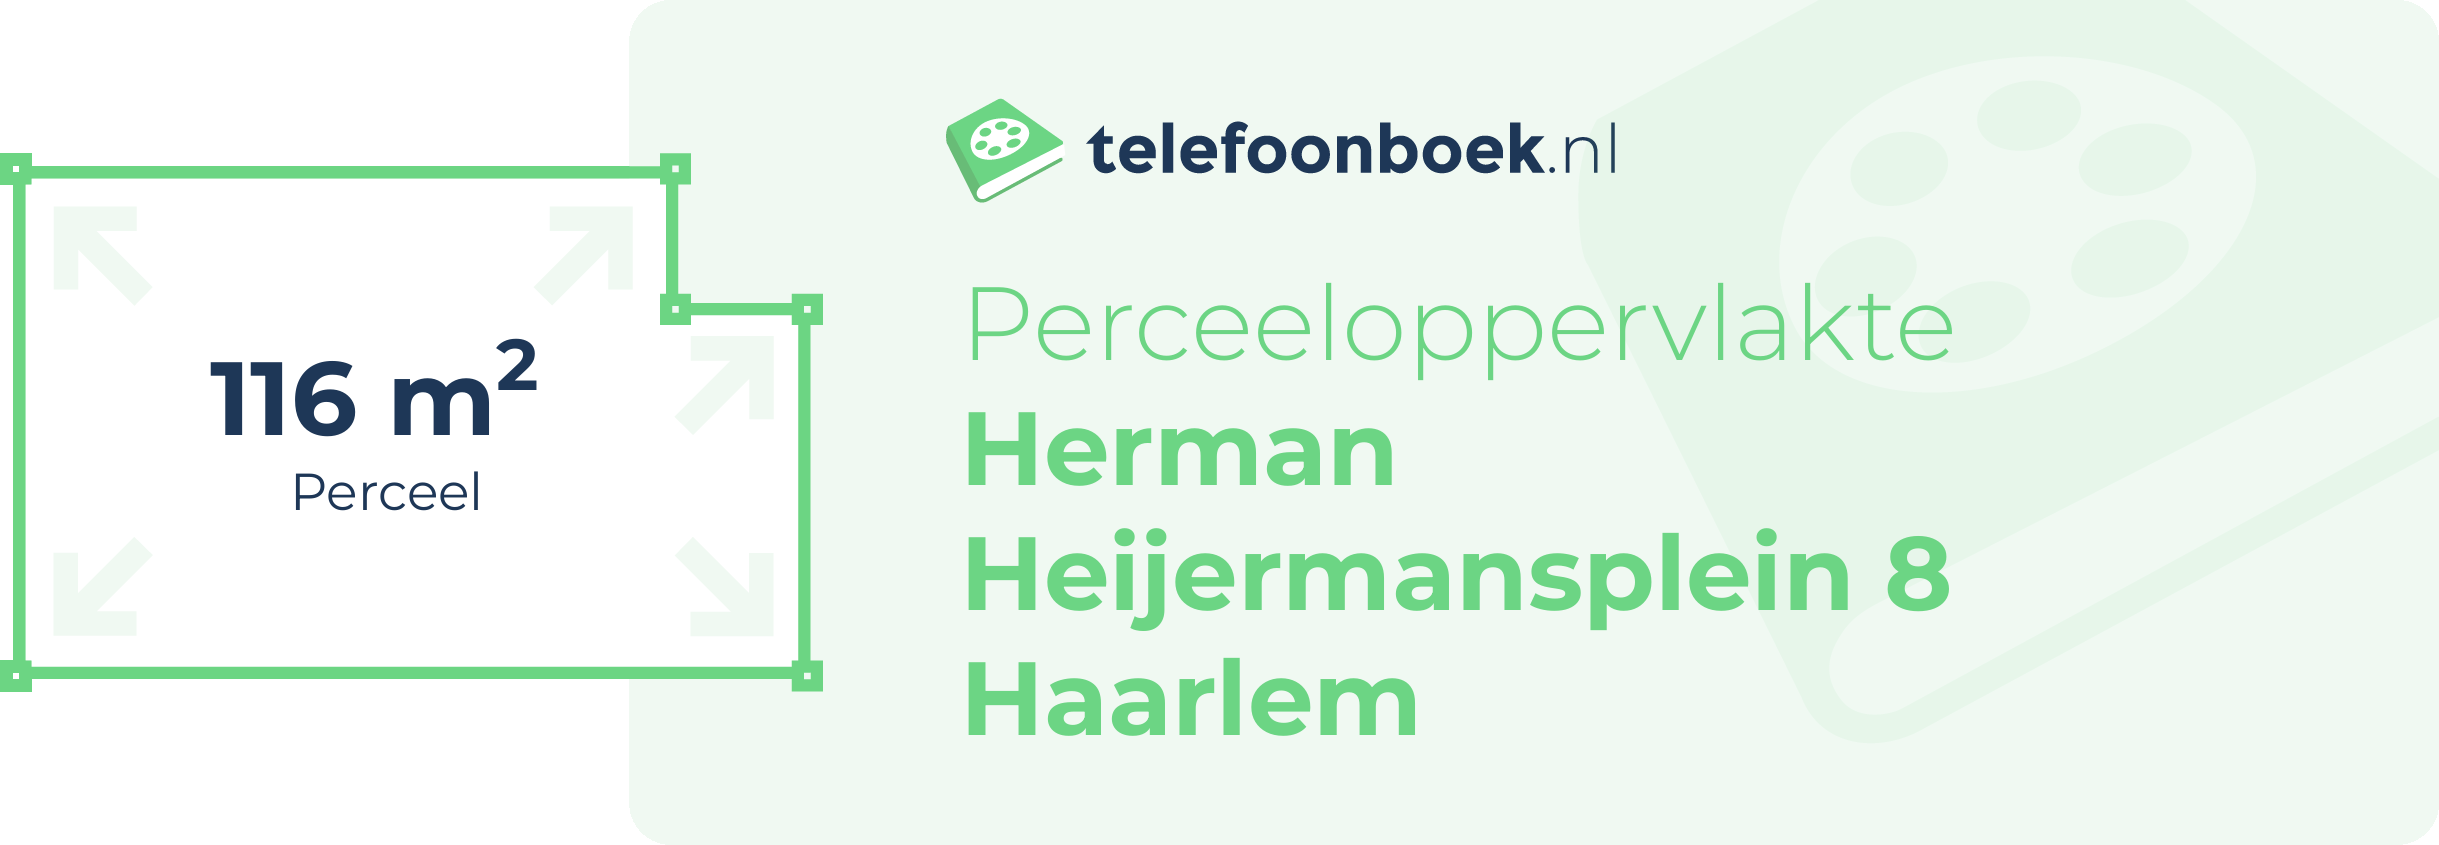 Perceeloppervlakte Herman Heijermansplein 8 Haarlem